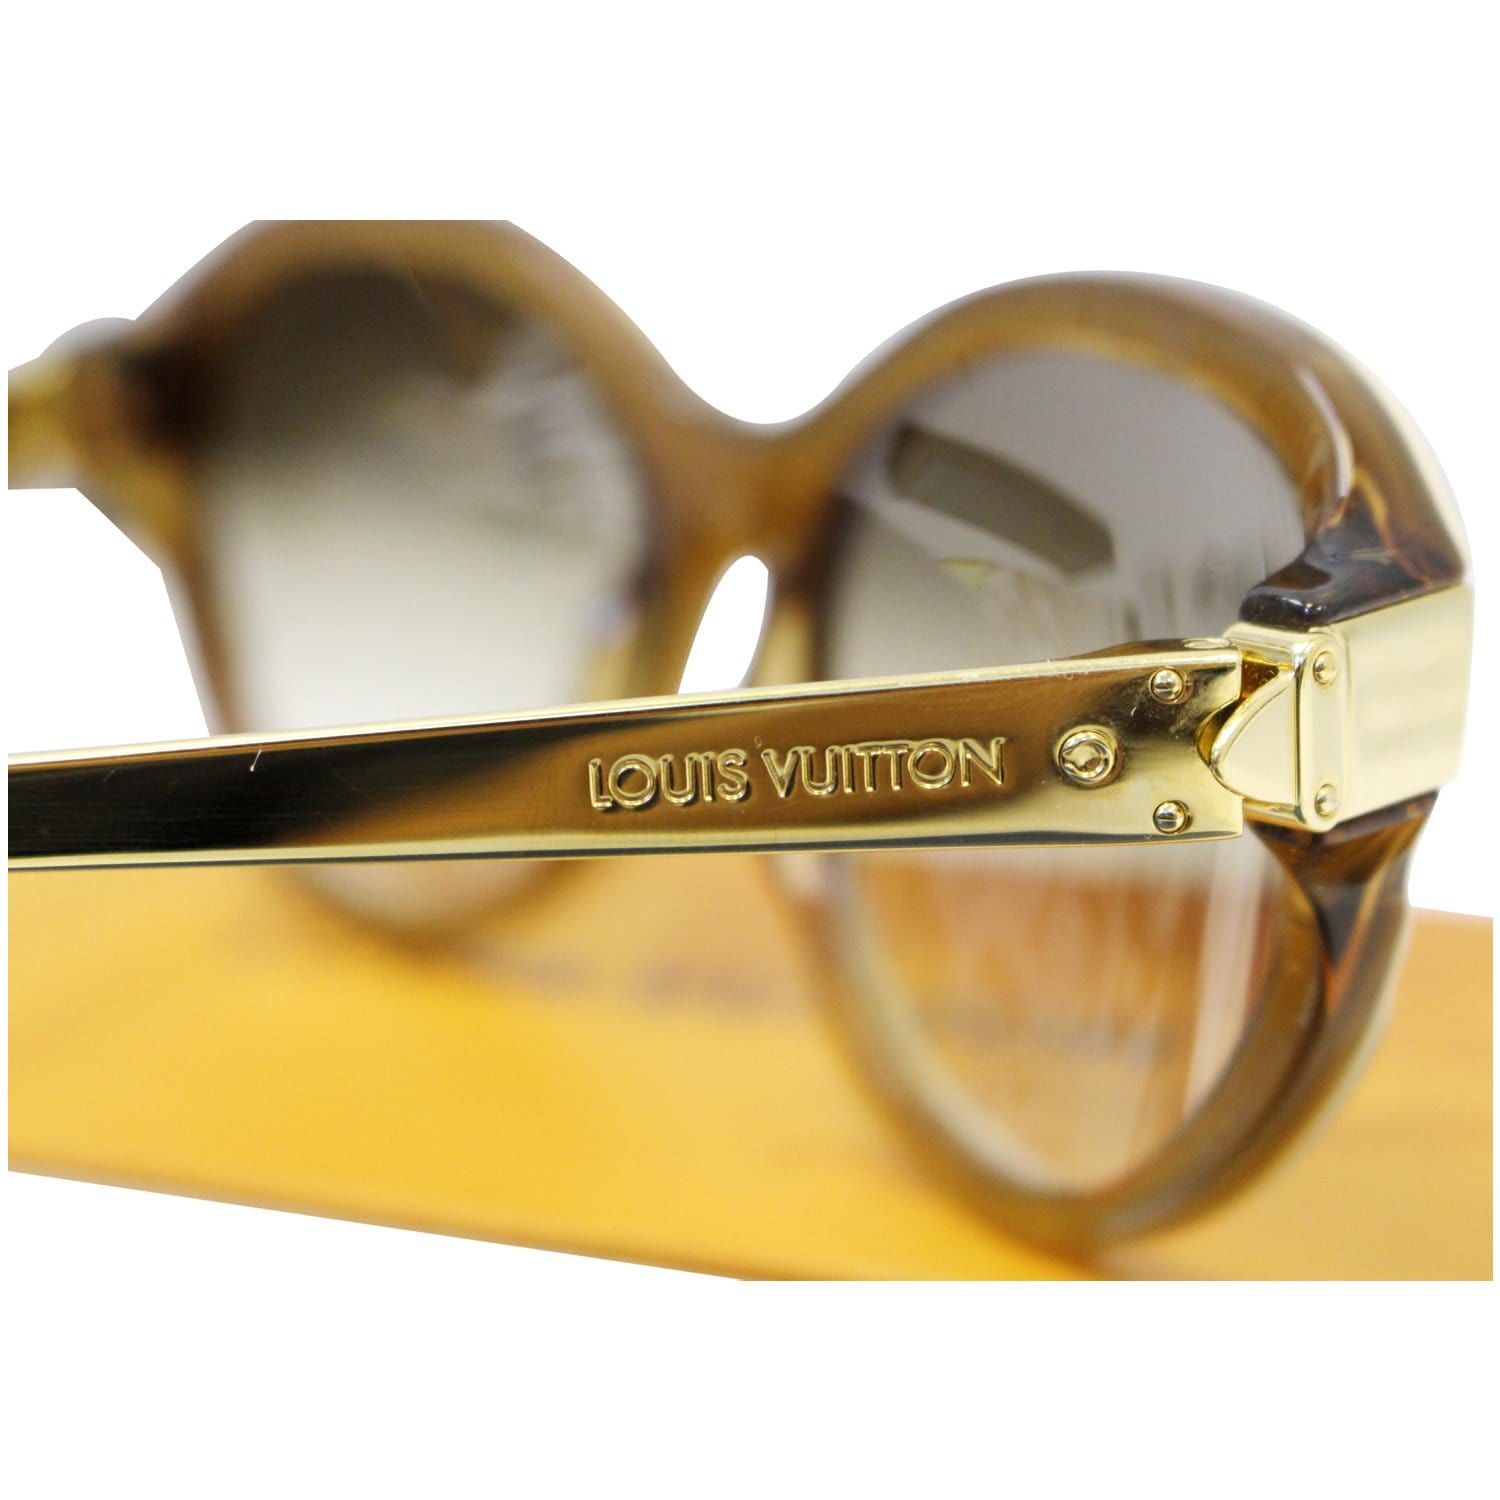 Louis Vuitton Petit Soupçon Cat Eye Sunglasses💎 RSP 1100$